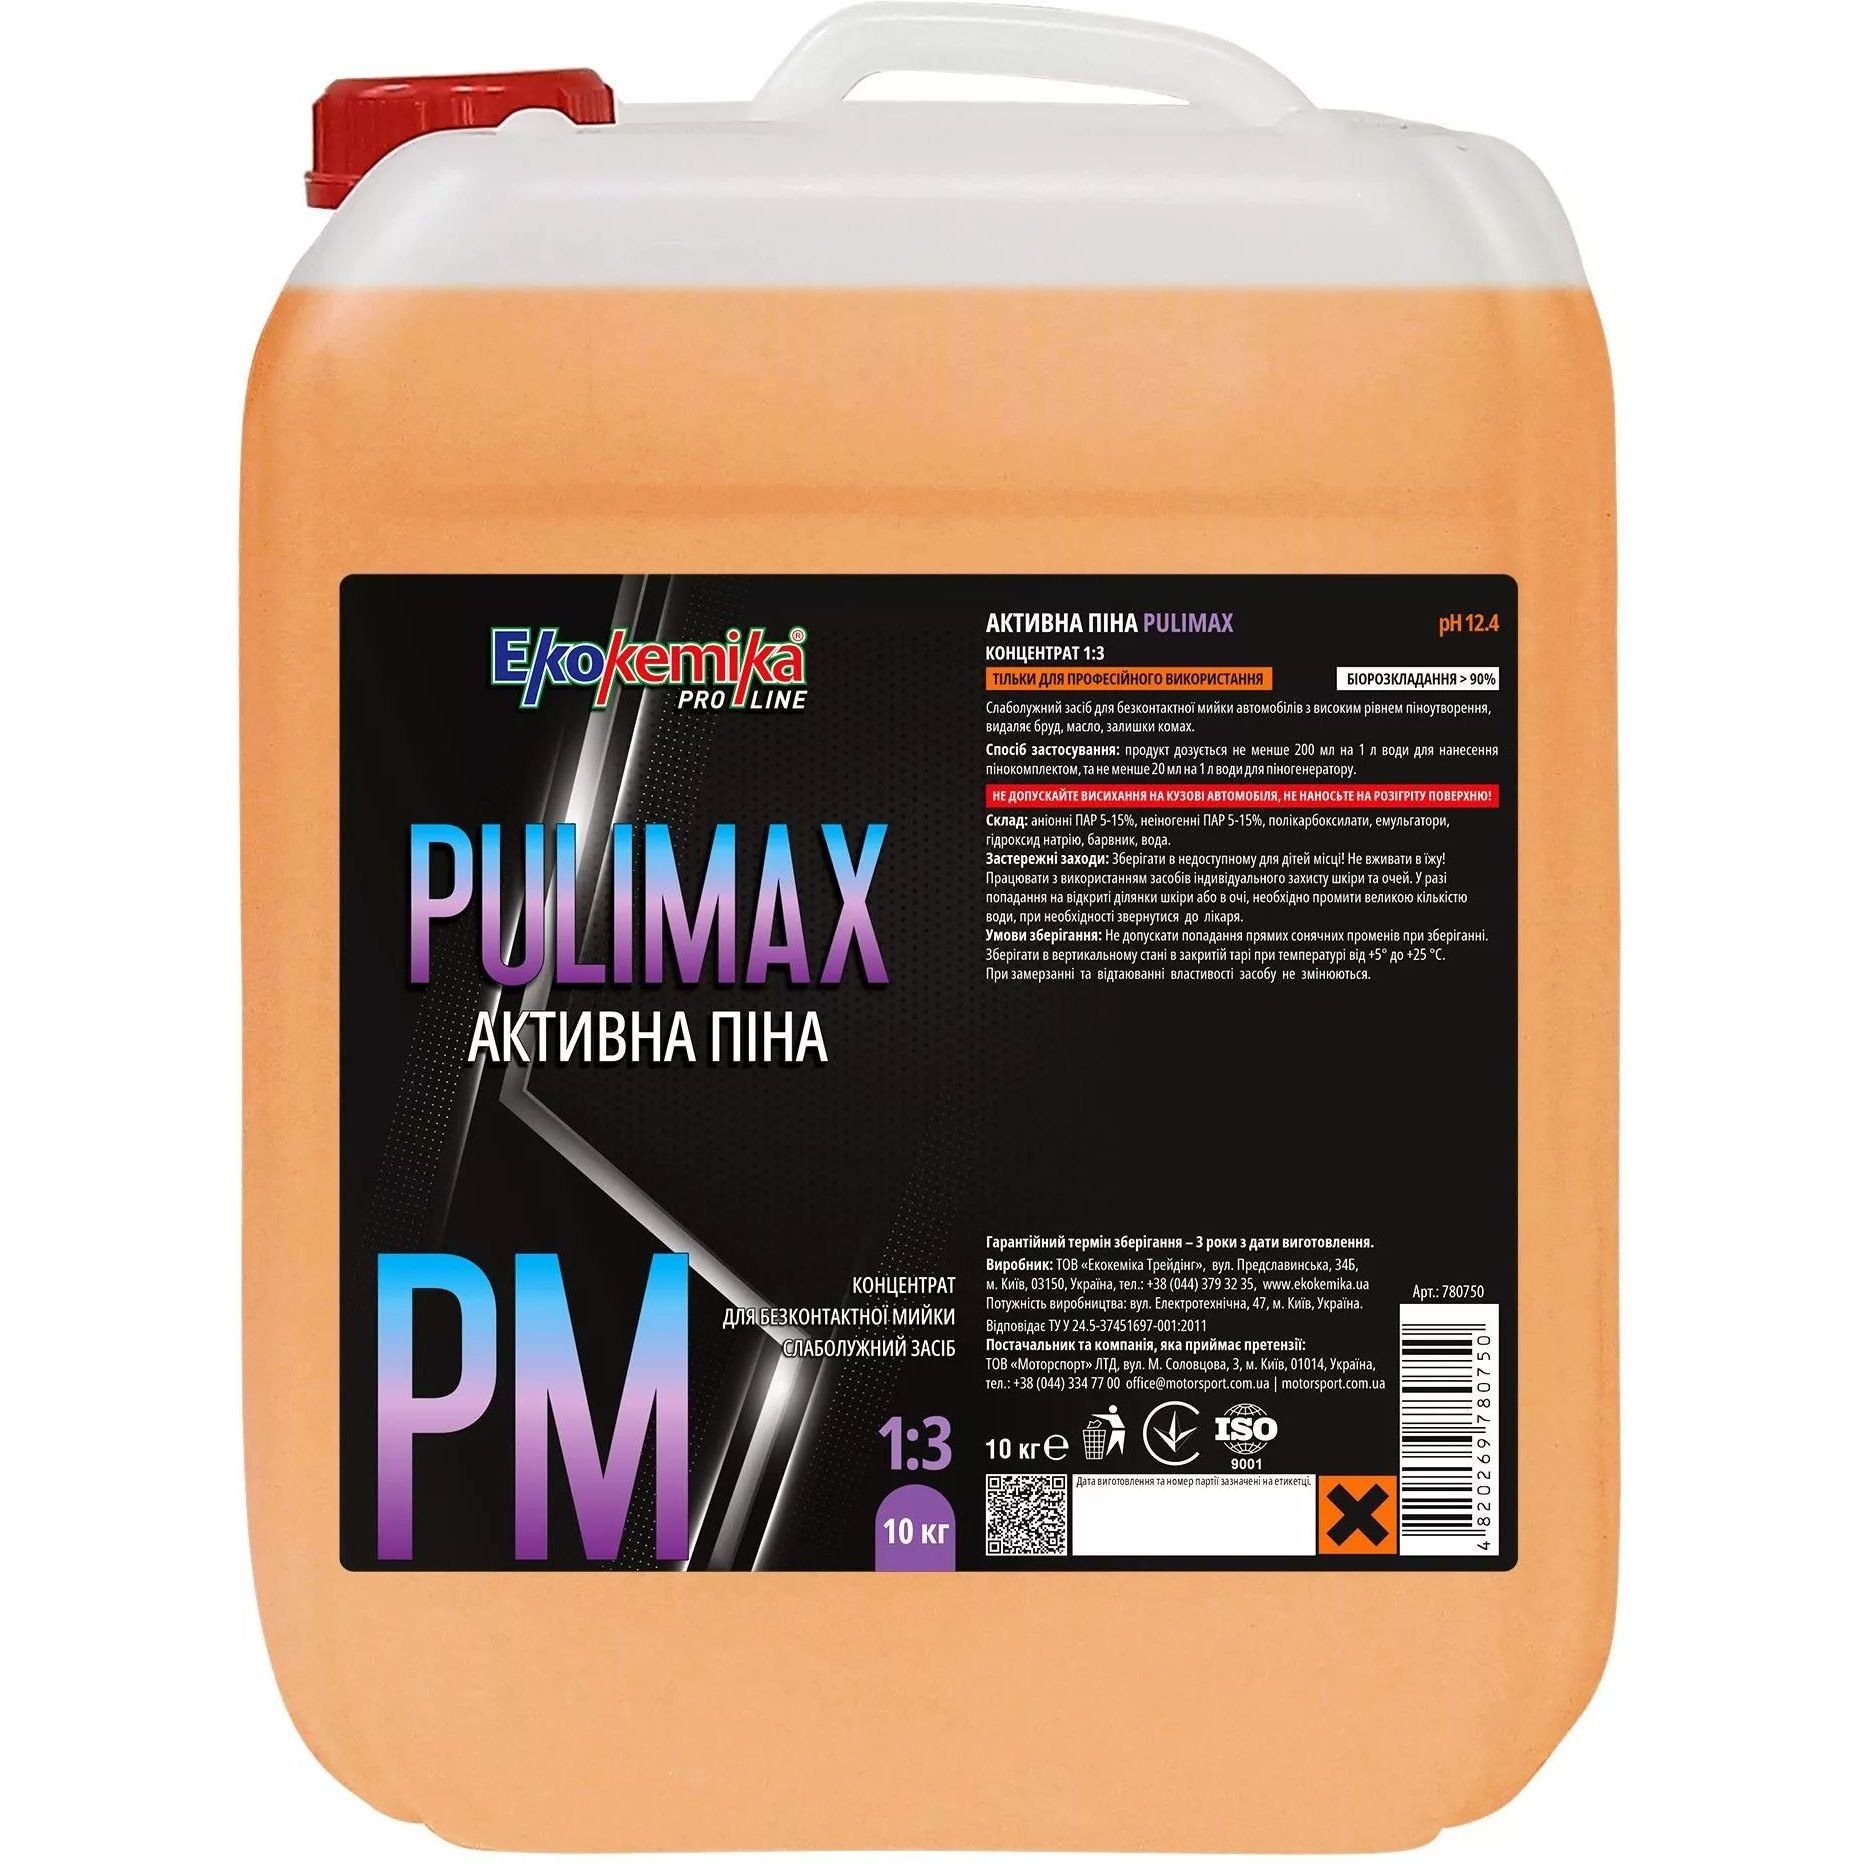 Активна піна Ekokemika Pro Line Pulimax 1:3, 10 кг (780750) - фото 1